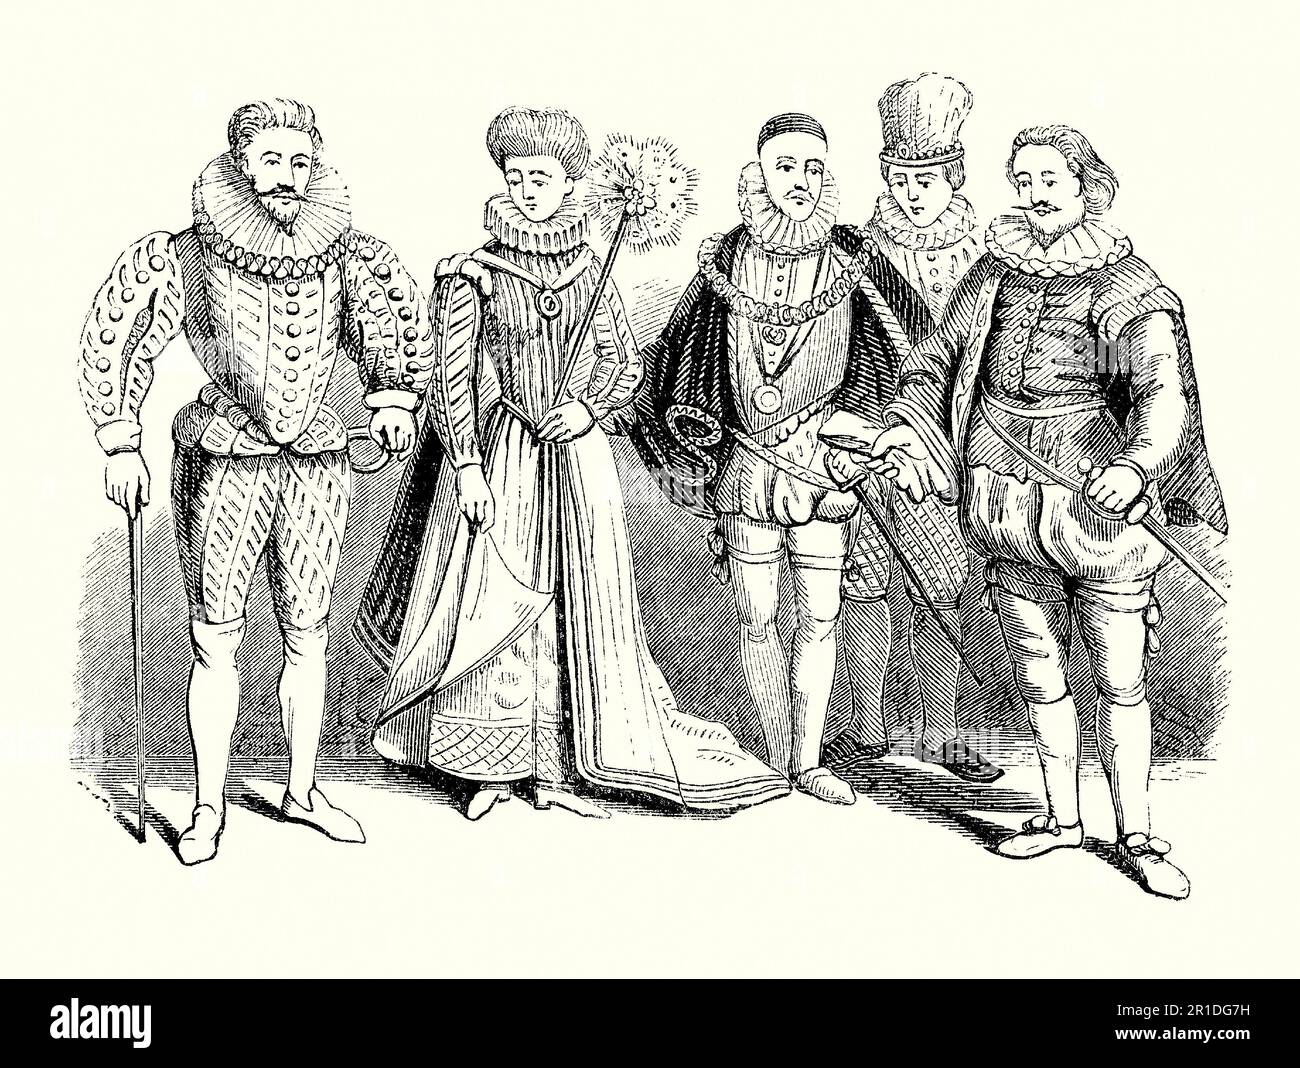 Una vecchia incisione di abbigliamento indossato in tempi Tudor/Elizabethan in Inghilterra. Lo stile del vestito risale all'ultima parte dei secoli 16th e 17th durante il regno di Elisabetta i (1558-1603). Più varietà si insinuano nel gusto e nelle mode dell'epoca. Gli abiti da donna erano abiti lunghi e vesti spesso ricamati con gioielli. I collari erano popolari. Per gli uomini sono stati indossati doppietto e manichetta, con braghe di varie lunghezze sotto una vita affusolata/stretta o cod-pezzo. Su questo si usurano dei piccoli mantello. Questi sarebbero stati portati da coloro che nella società con denaro, sbarcati gentry e la nobiltà a corte. Foto Stock